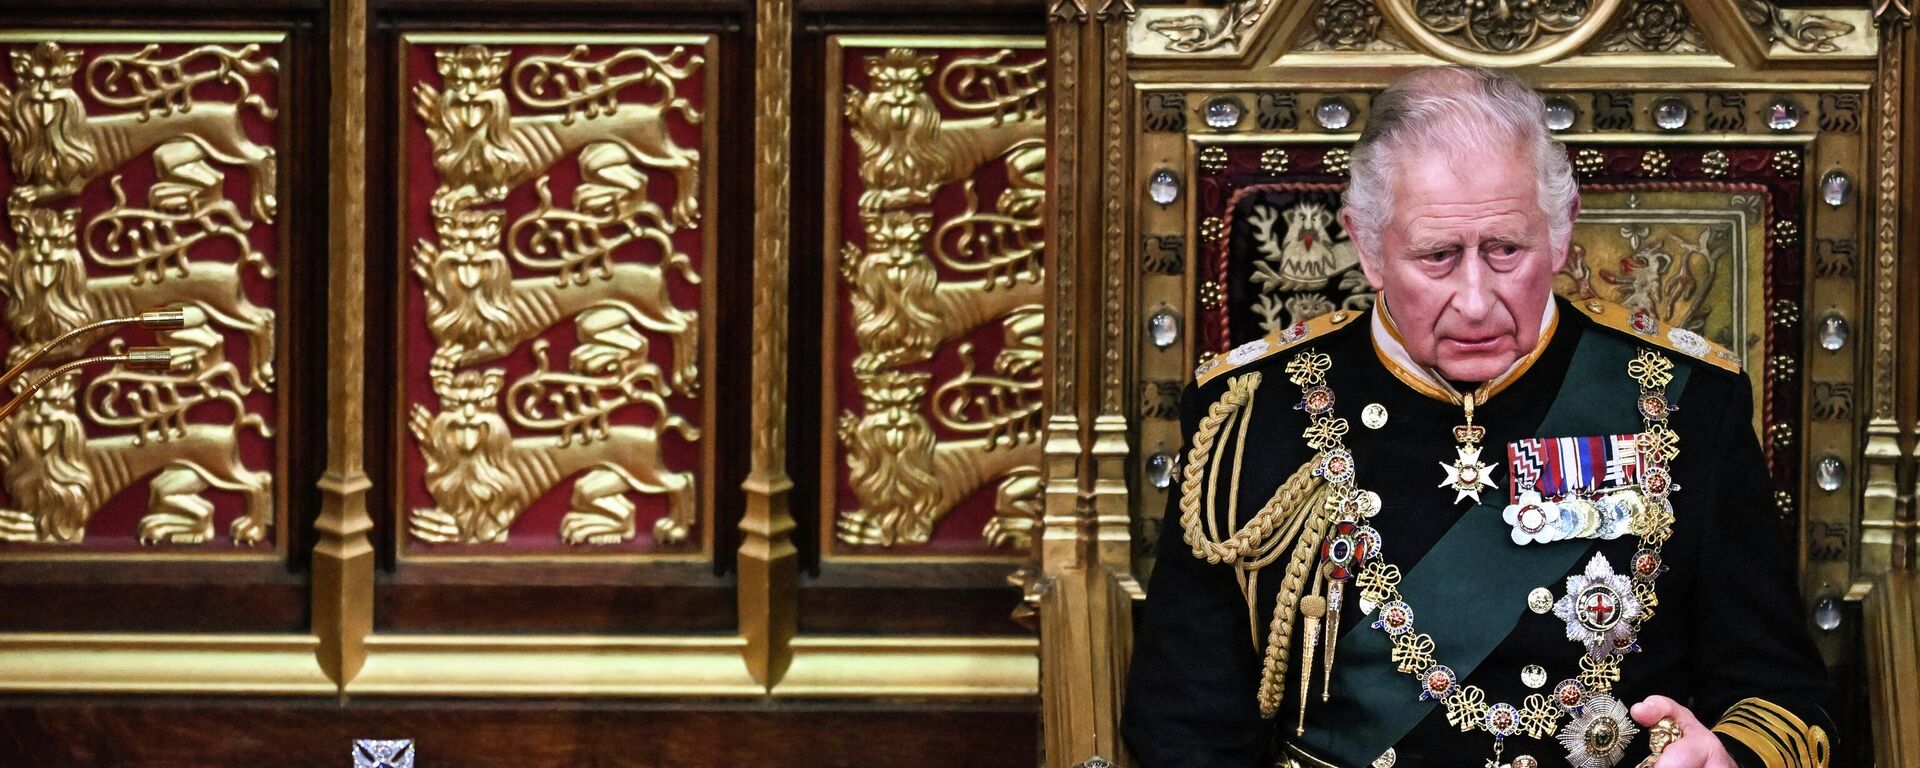 الأمير تشارلز يجلس أمام تاج الدولة الإمبراطوري في غرفة مجلس اللوردات، خلال الافتتاح الرسمي للبرلمان، في مجلسي البرلمان، في لند ، إنجلترا 10 مايو 2022. - سبوتنيك عربي, 1920, 19.01.2023